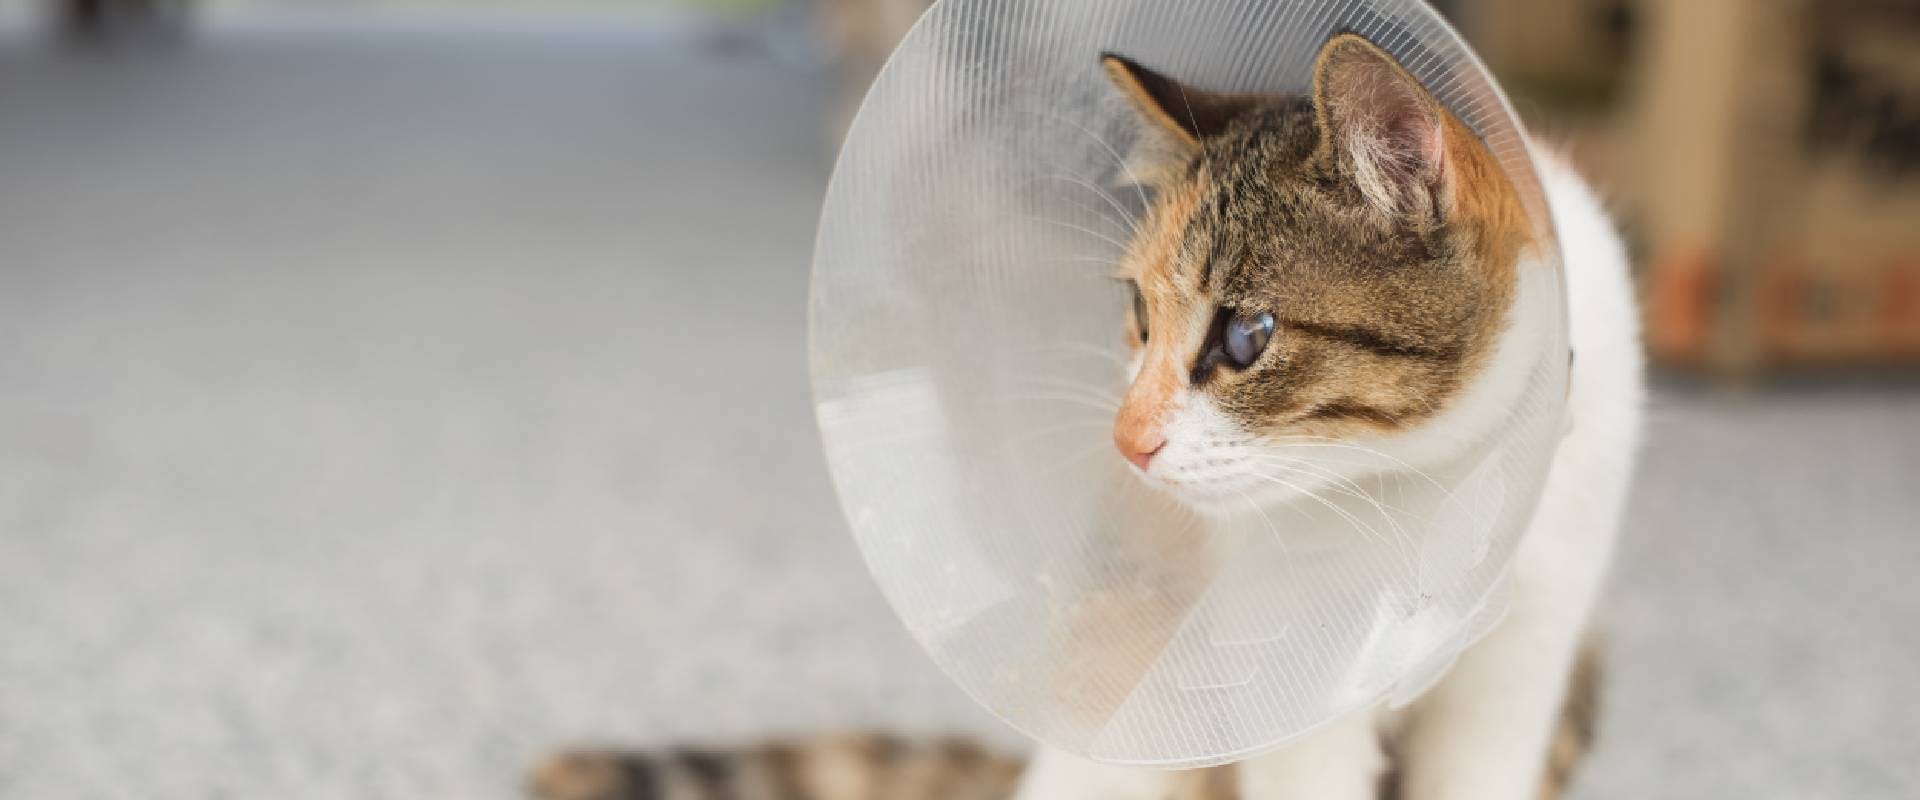 Cat in a cone of shame